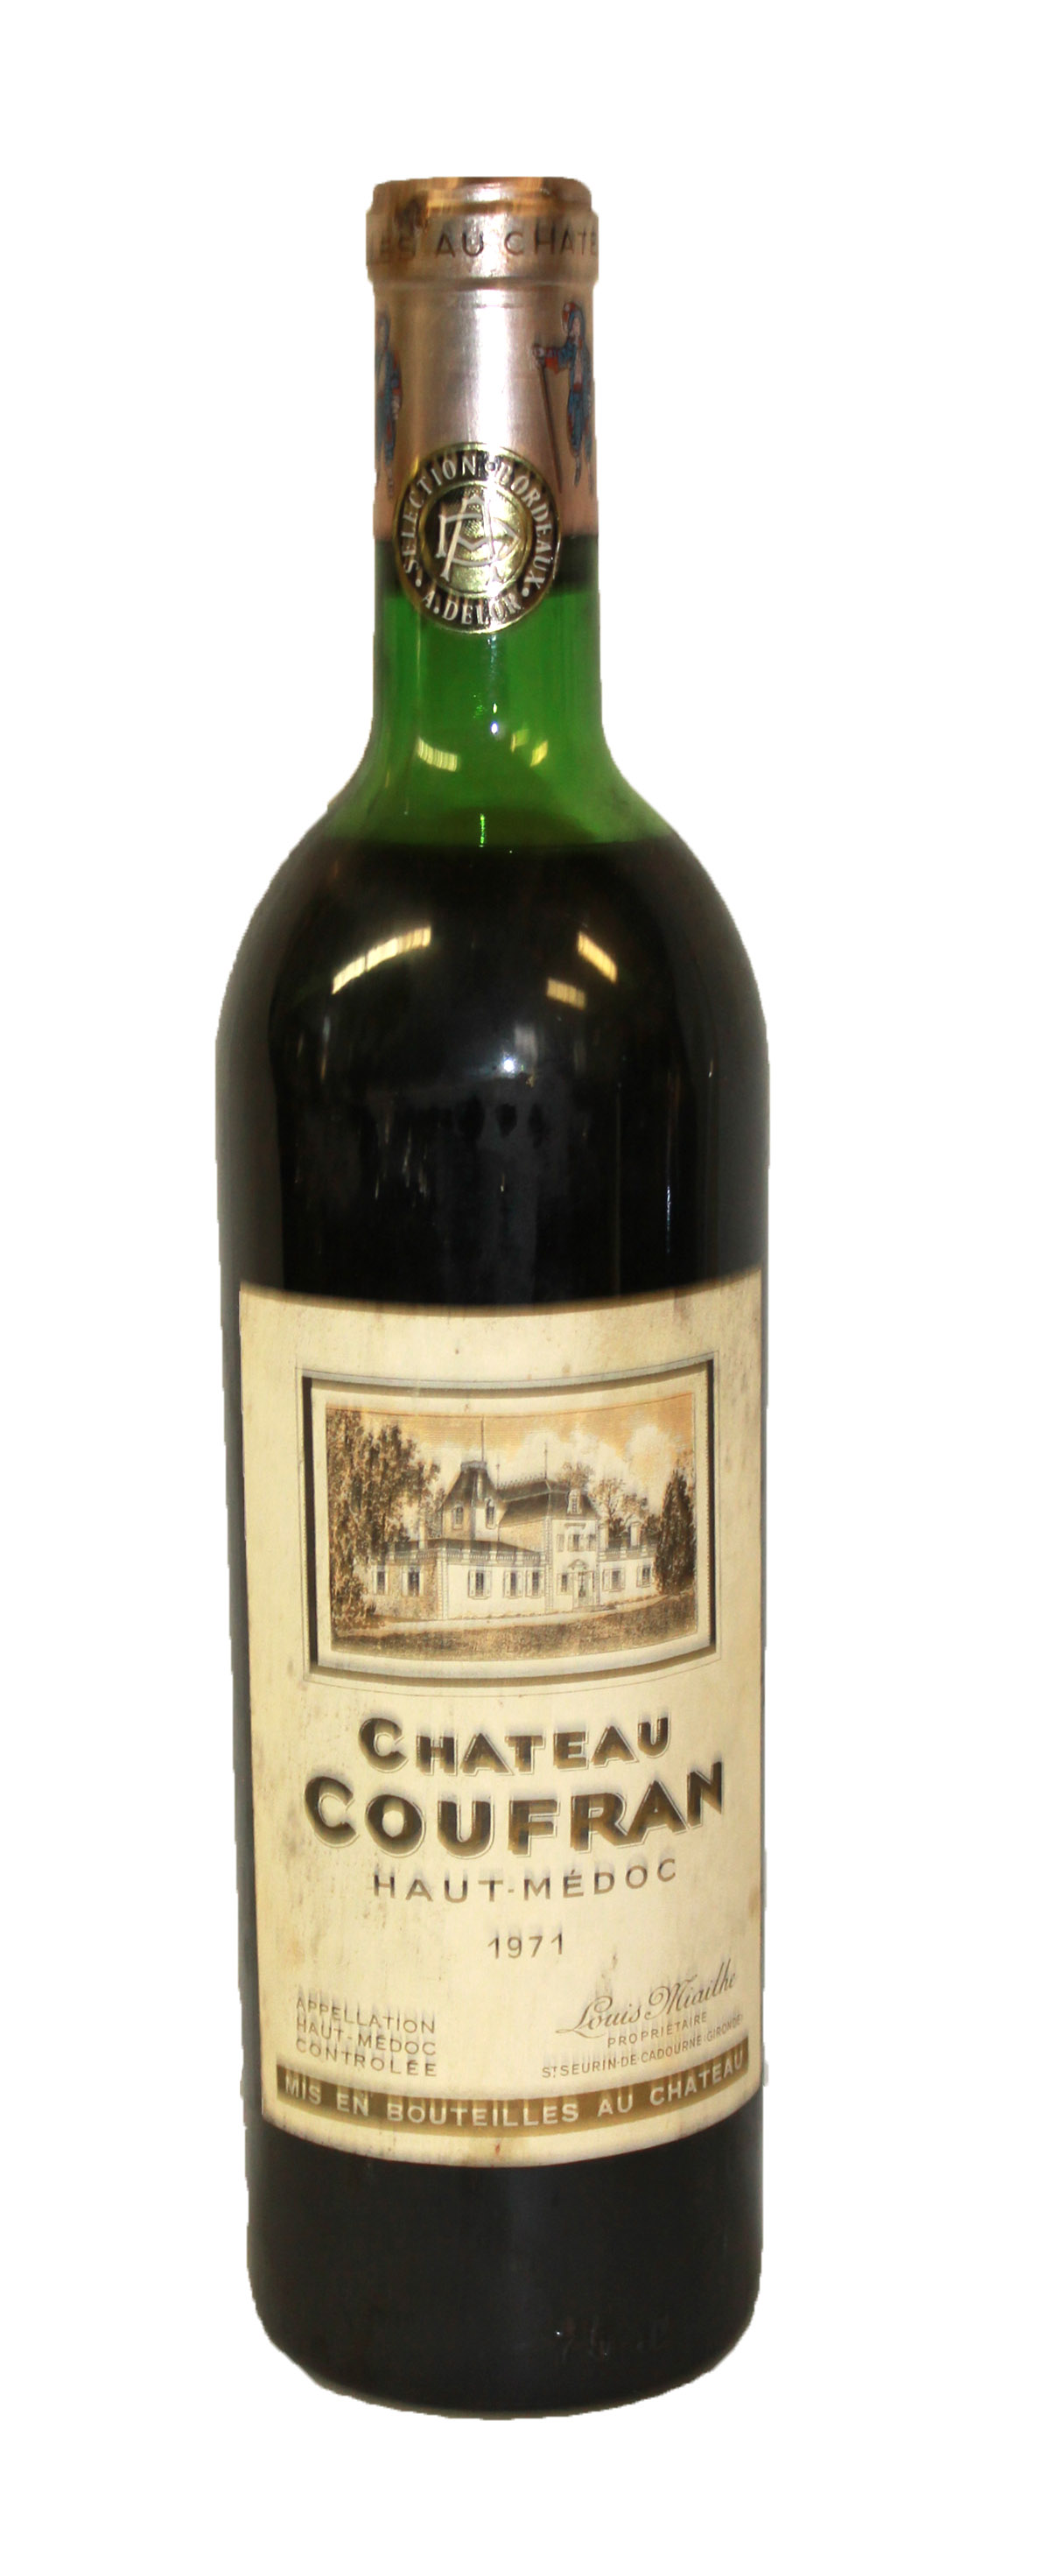 CHÂTEAU COUFRAN HAUT-MÉDOC, 1971, A BOTTLE OF VINTAGE WINE Having a gilt tone design to label.